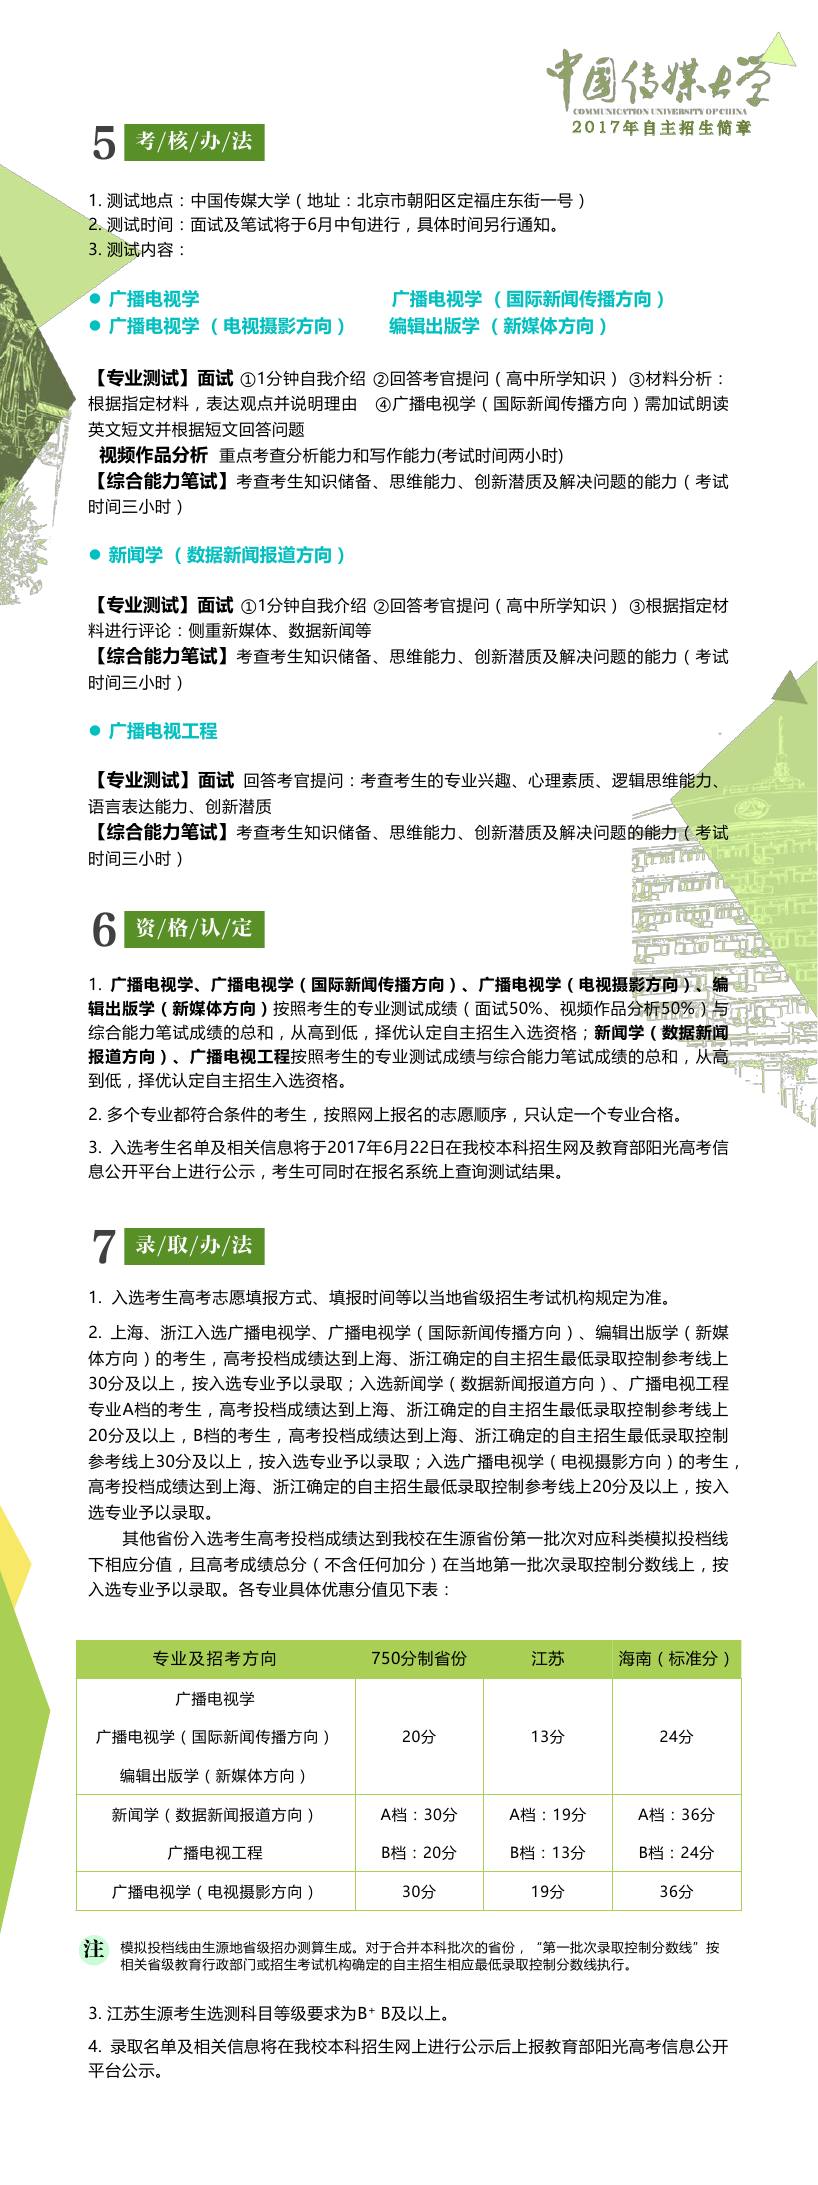 中国传媒大学2017年自主招生简章